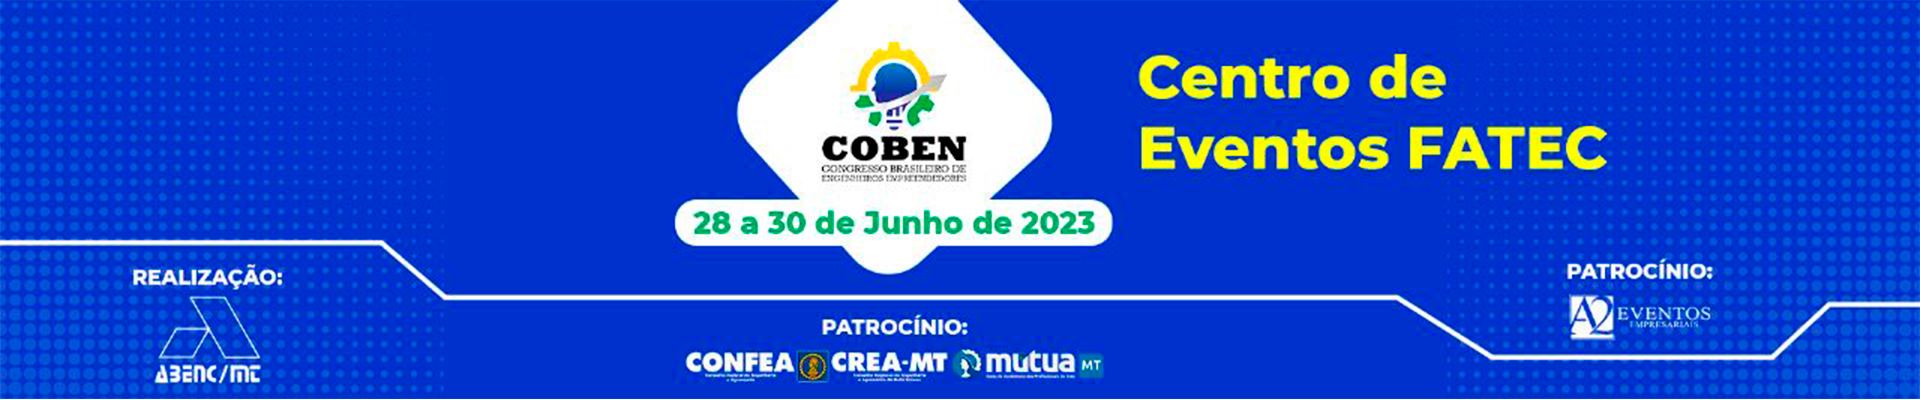 1º COBEN será realizado nos dias 28, 29 e 30 de junho em Cuiabá